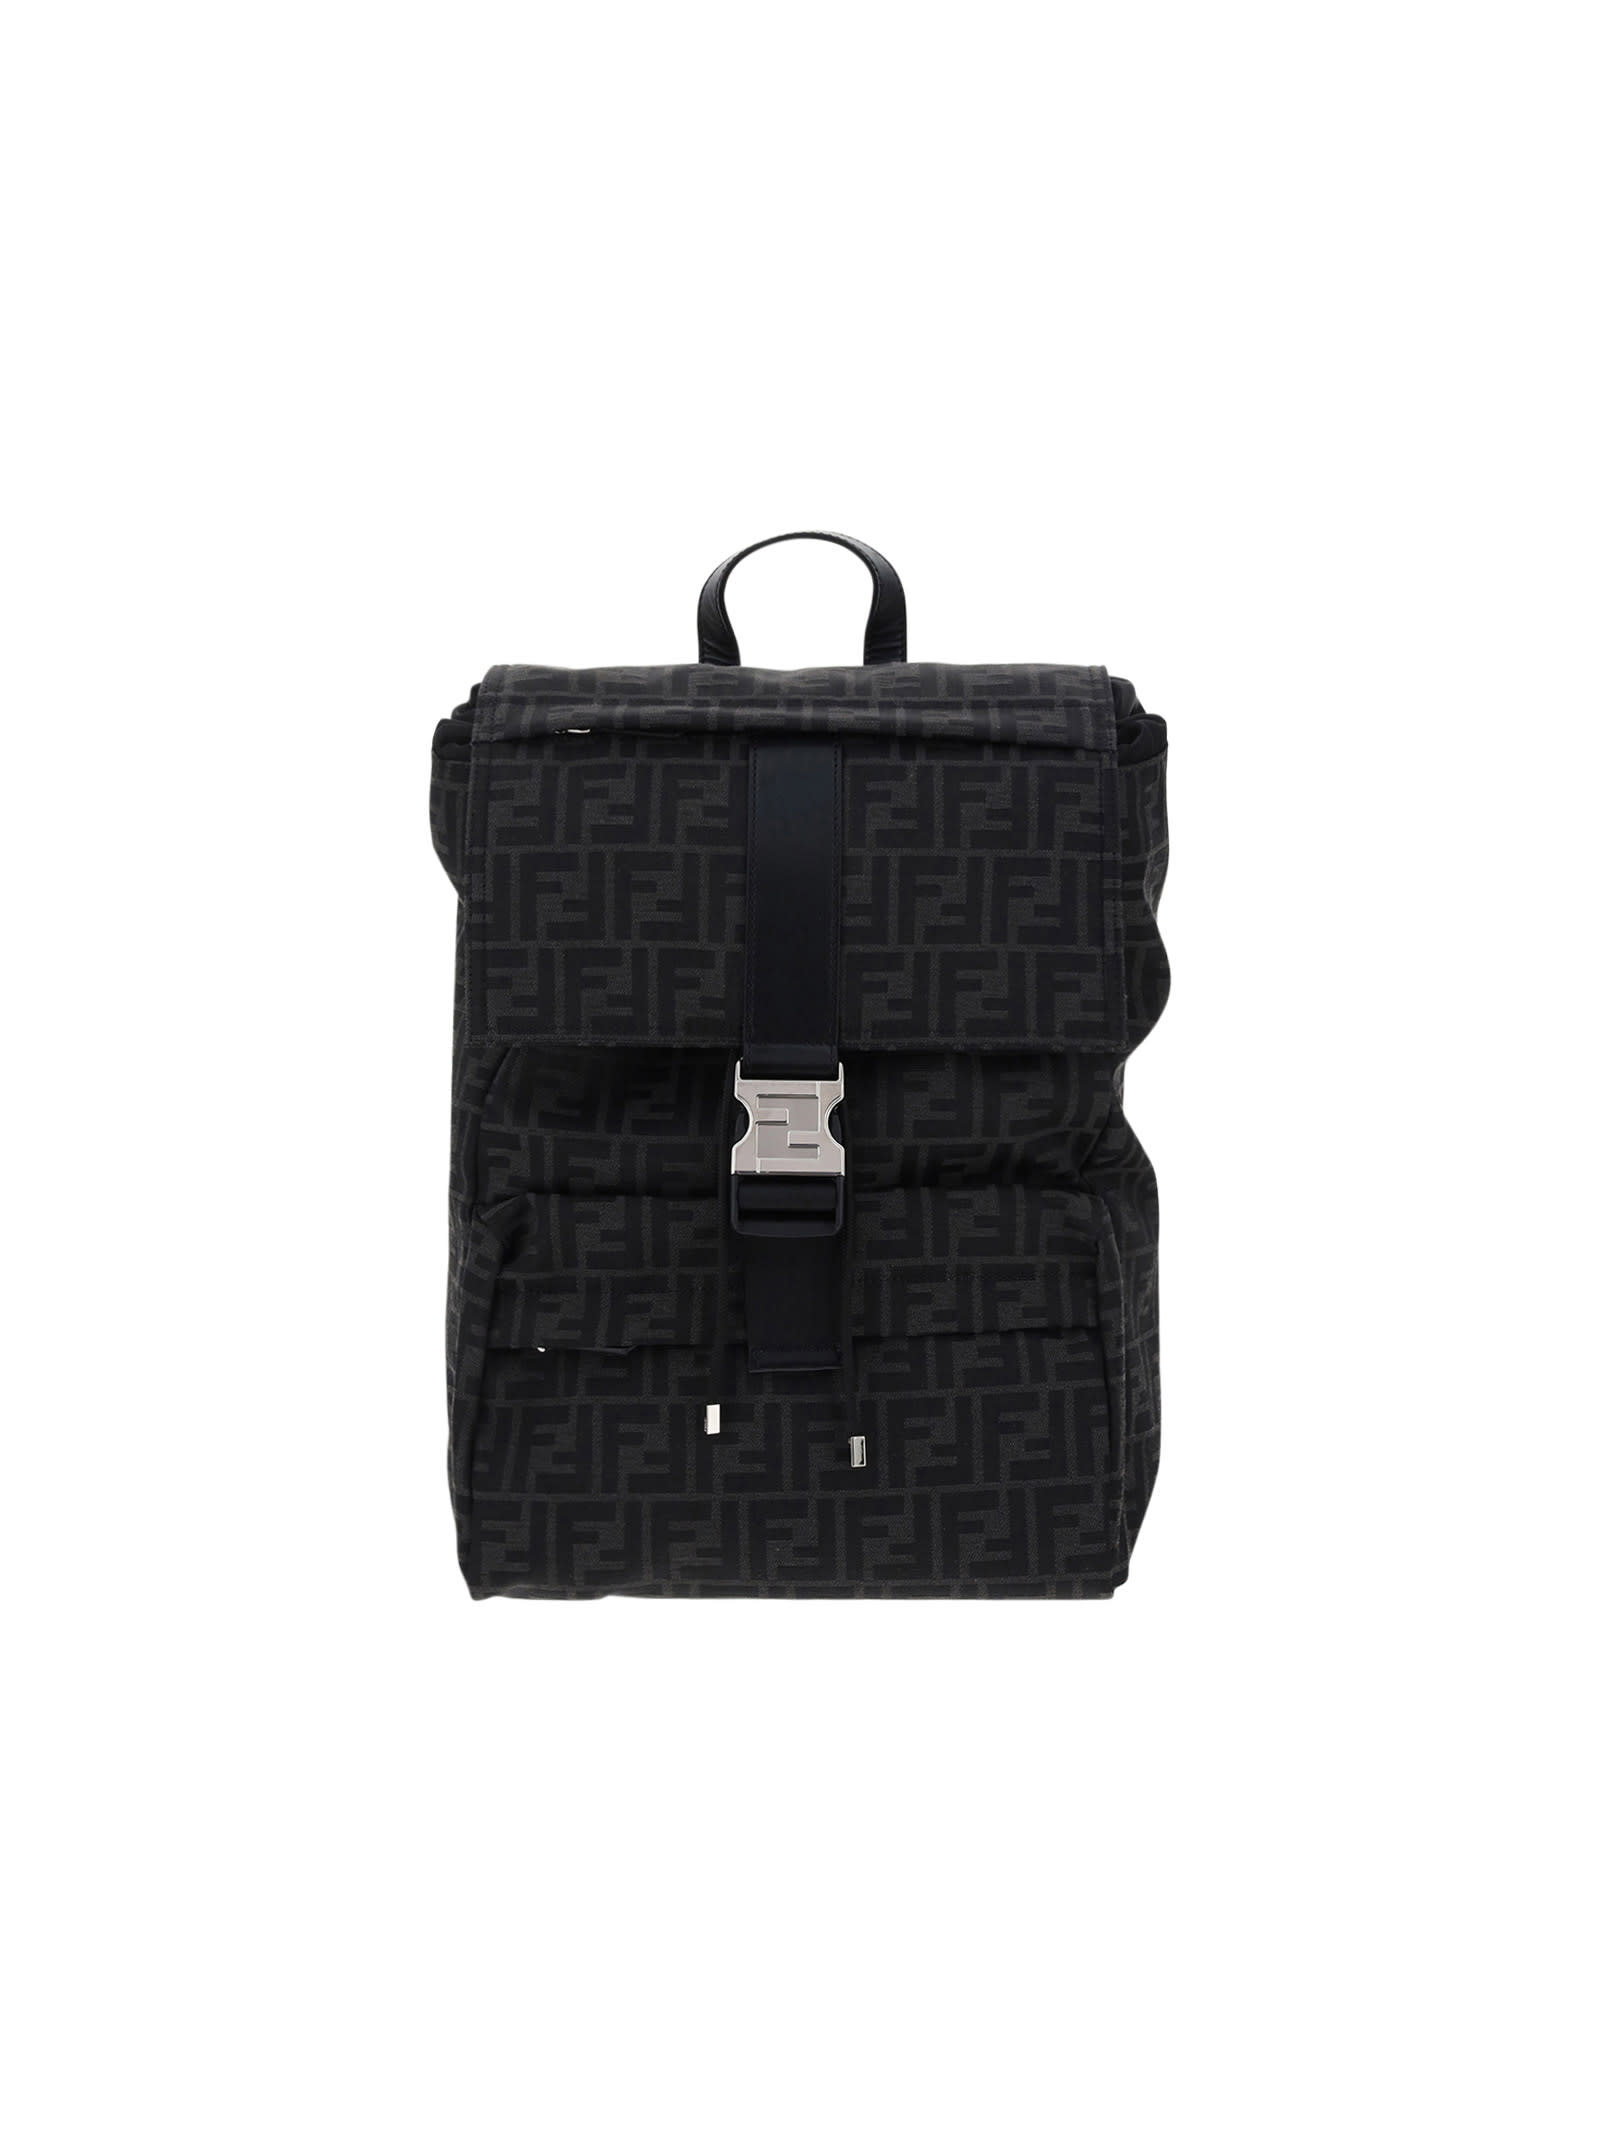 Fendi Ness Backpack